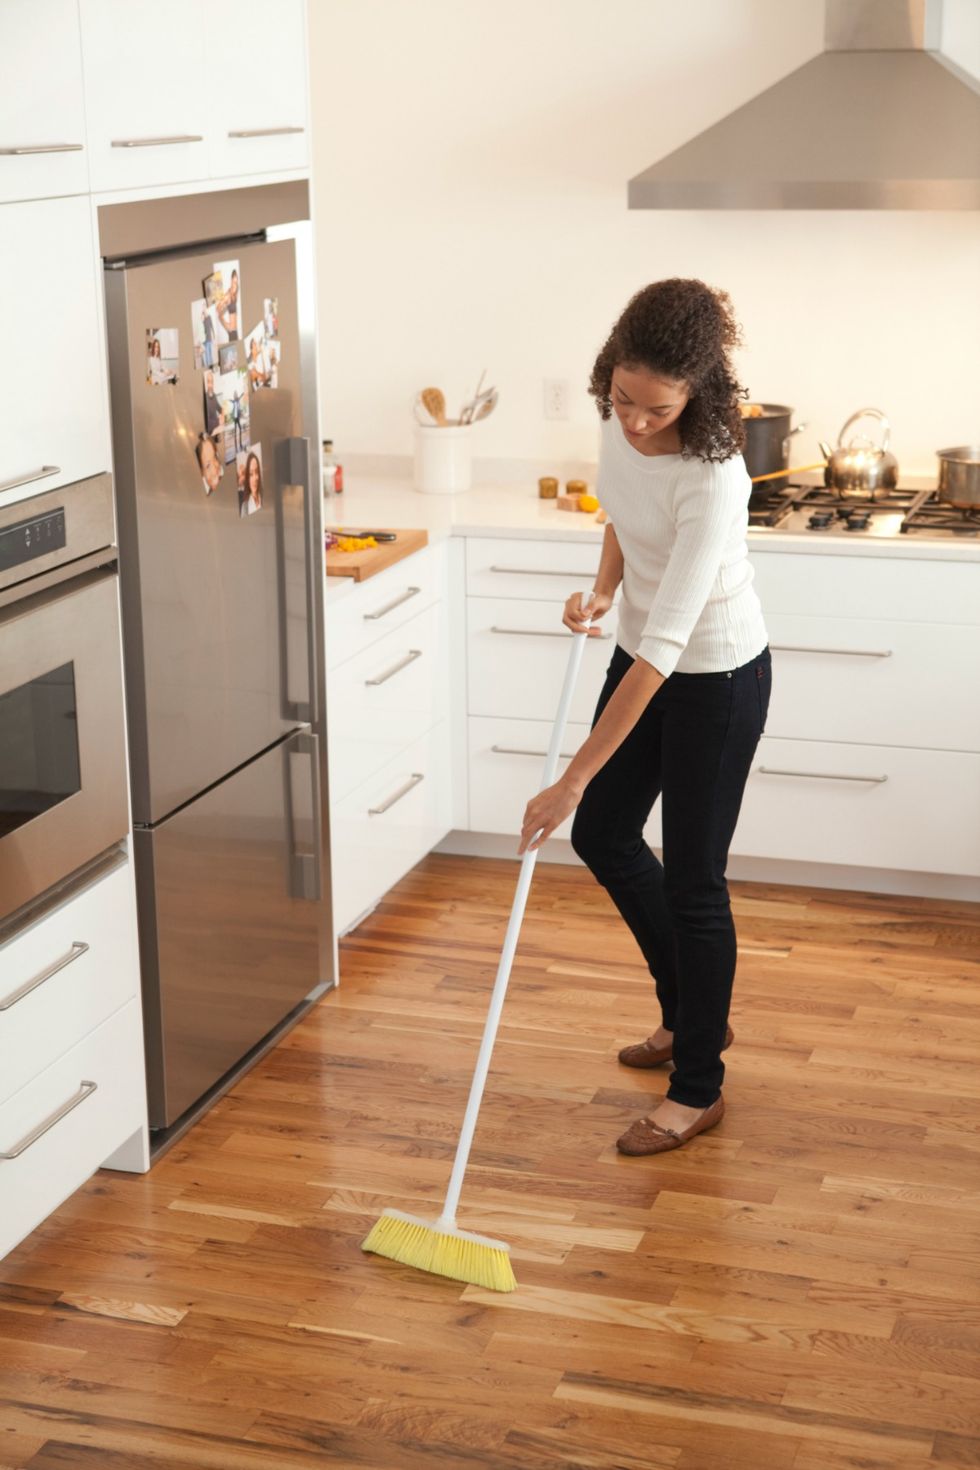 Limpiar la casa: elige los mejores trucos fáciles y rápidos